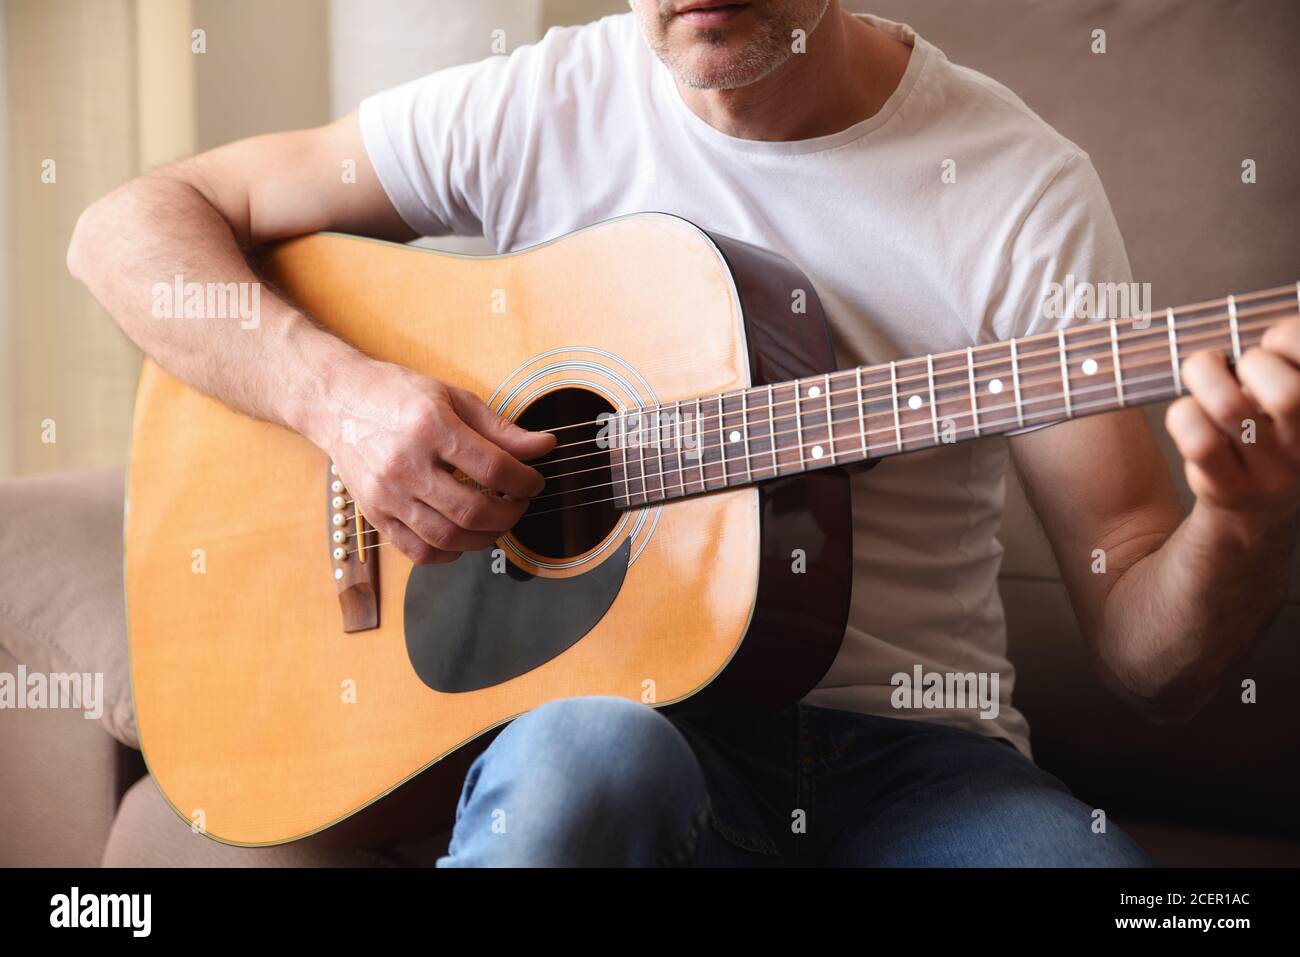 Dettaglio del corpo della chitarra acustica e dell'uomo che suona con il bianco camicia a manica corta e jeans blu Foto Stock